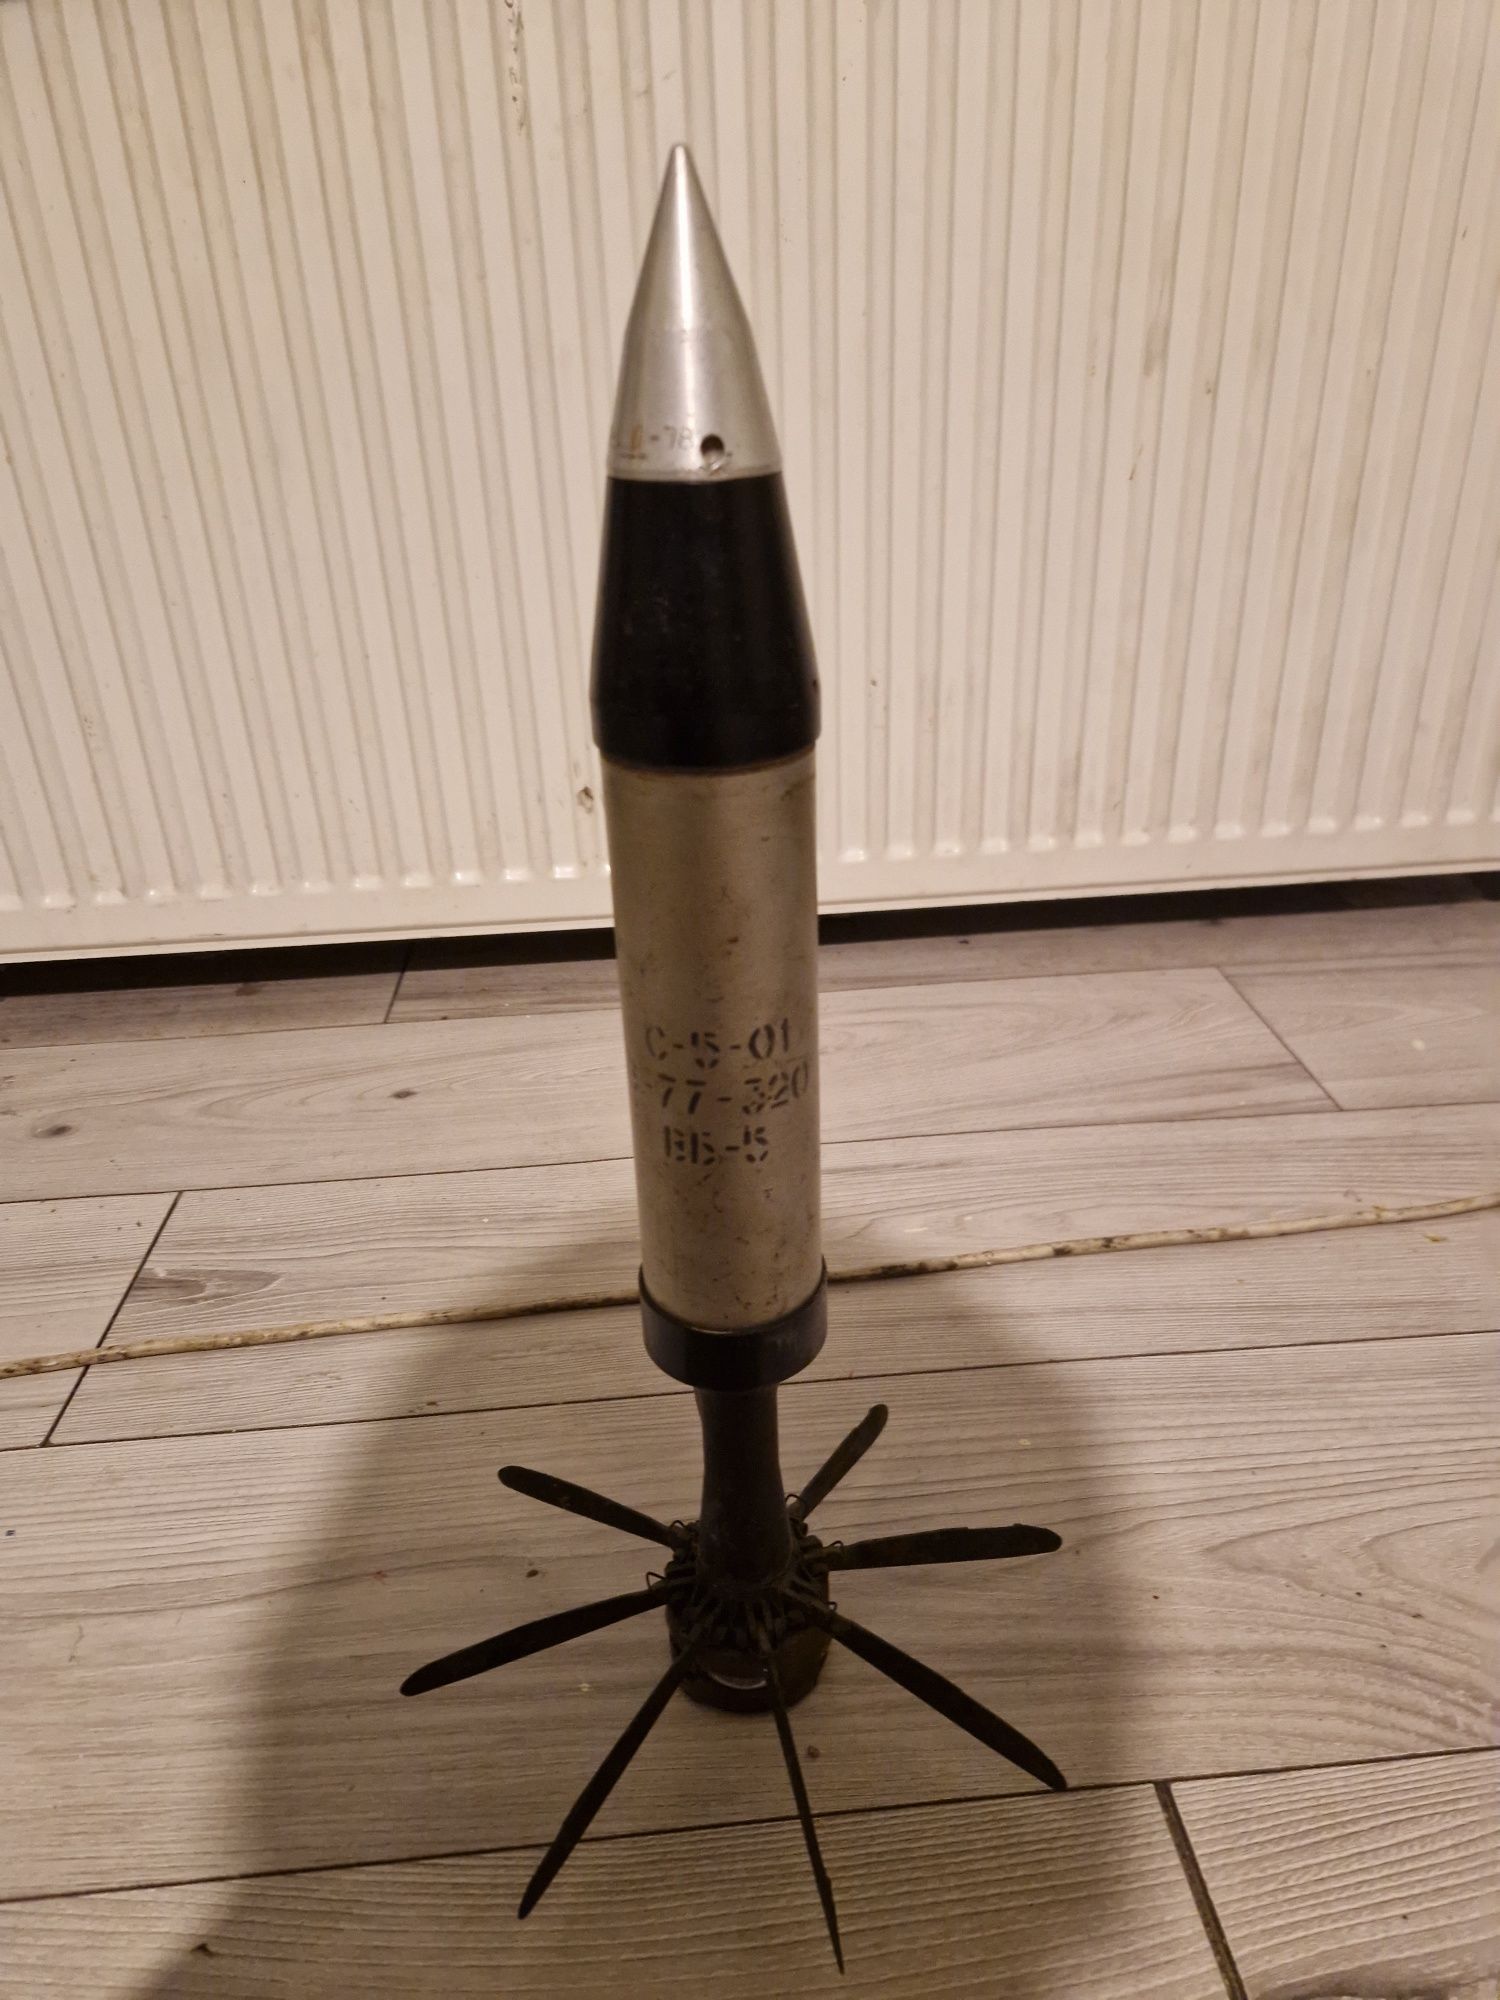 Radziecka rakieta 57mm rakieta S5